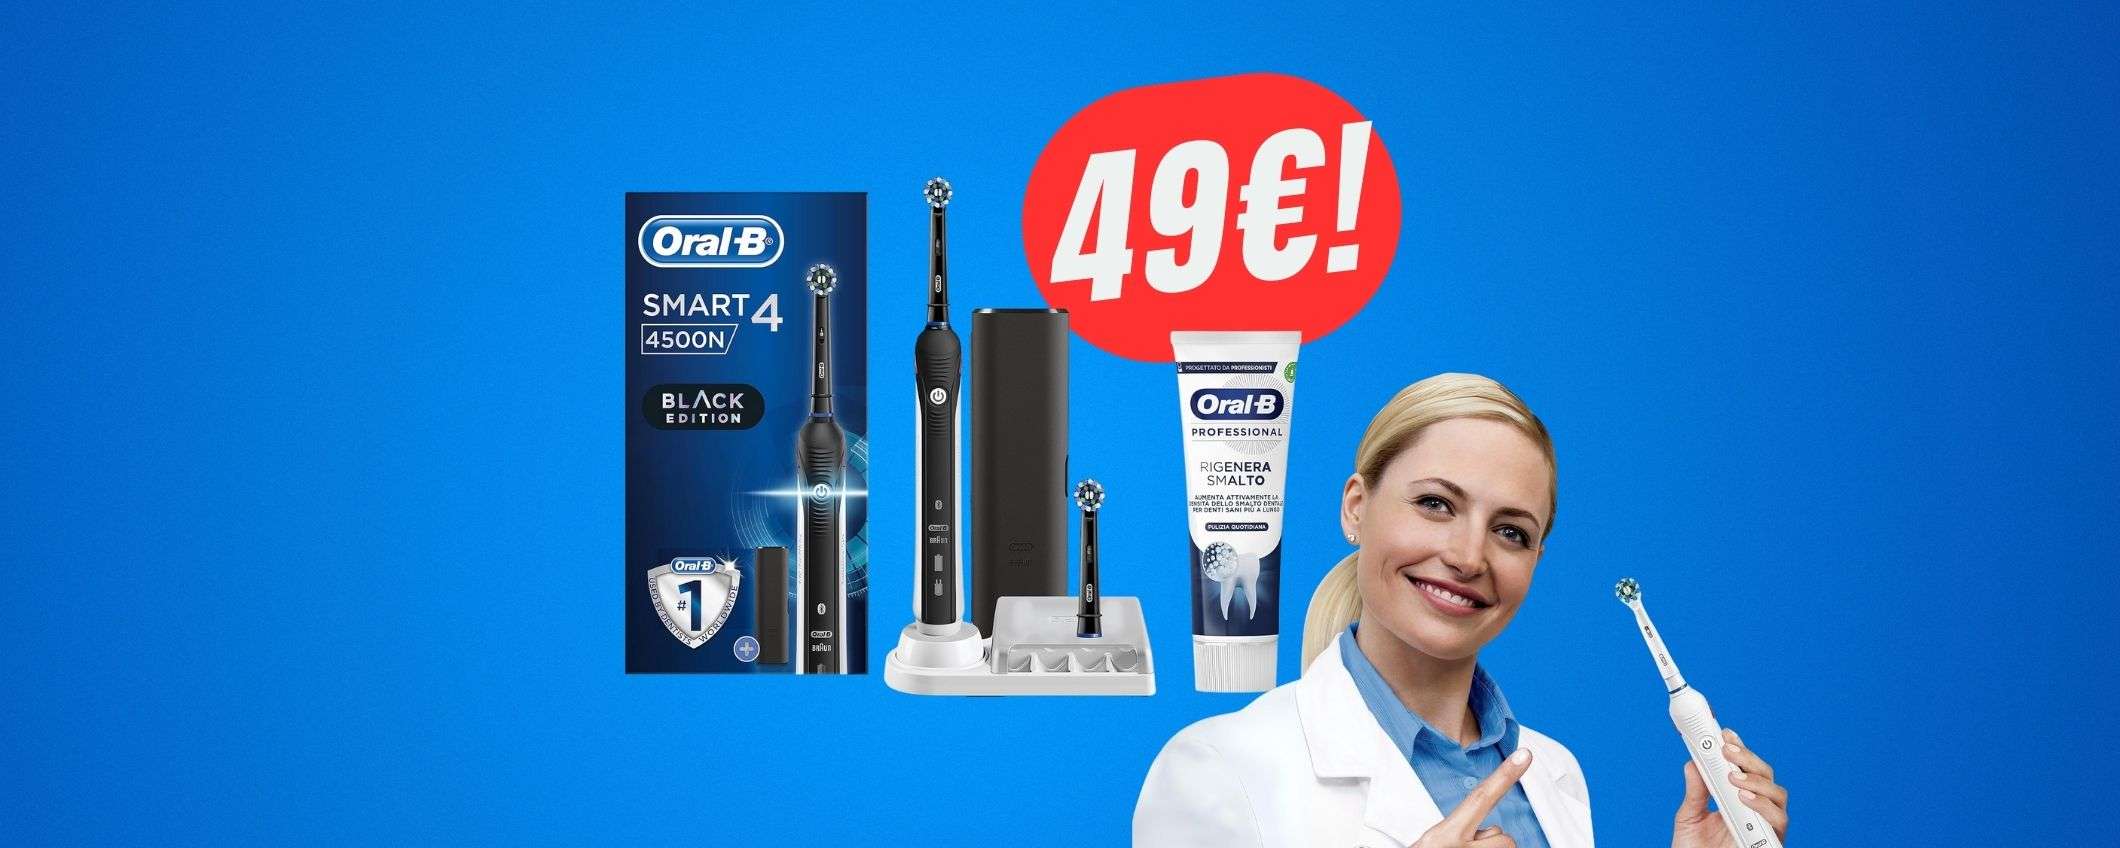 SCONTO di 58€ per lo spazzolino elettrico ORAL-B!